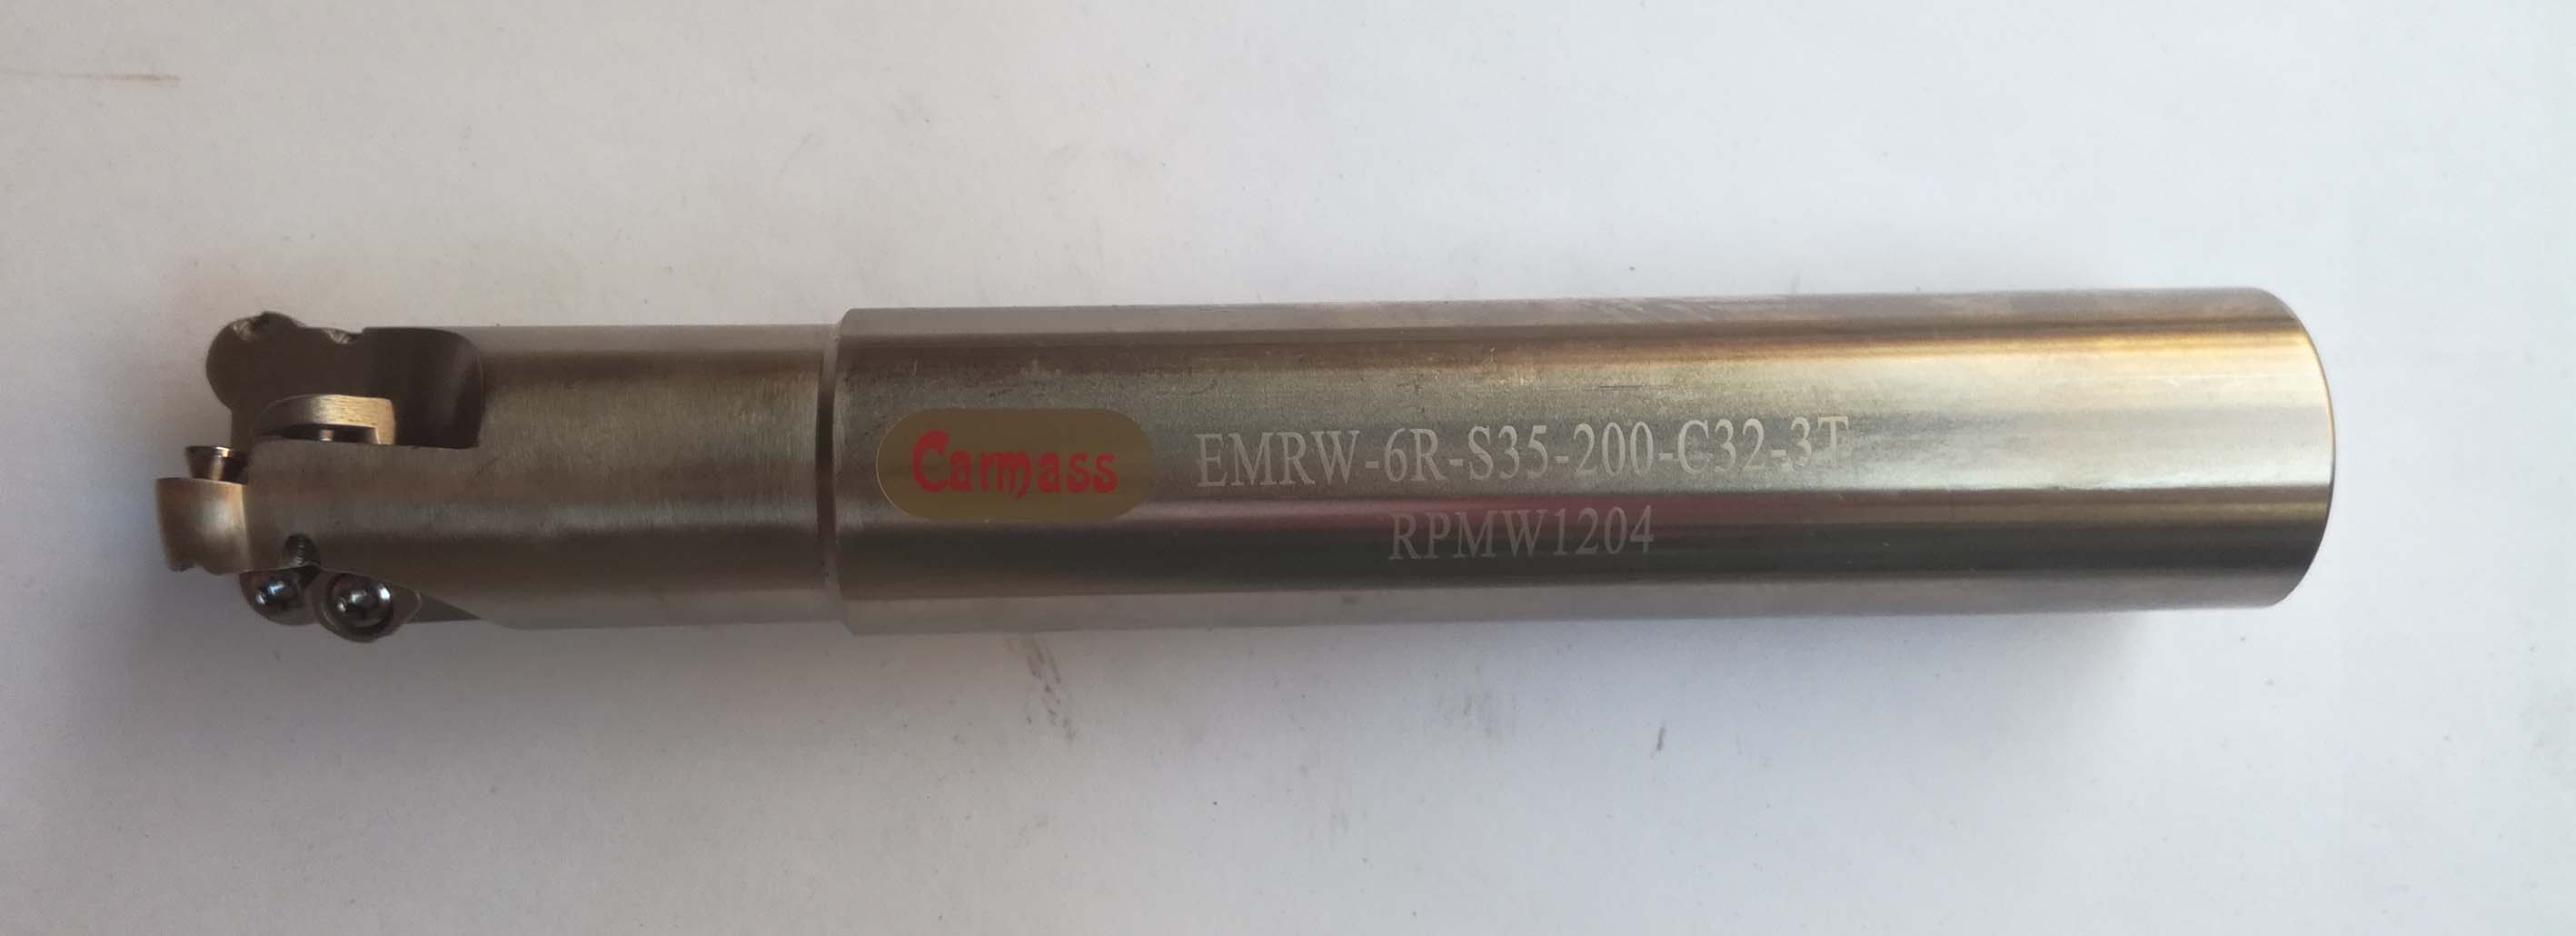 EMR6R-35-200-C32